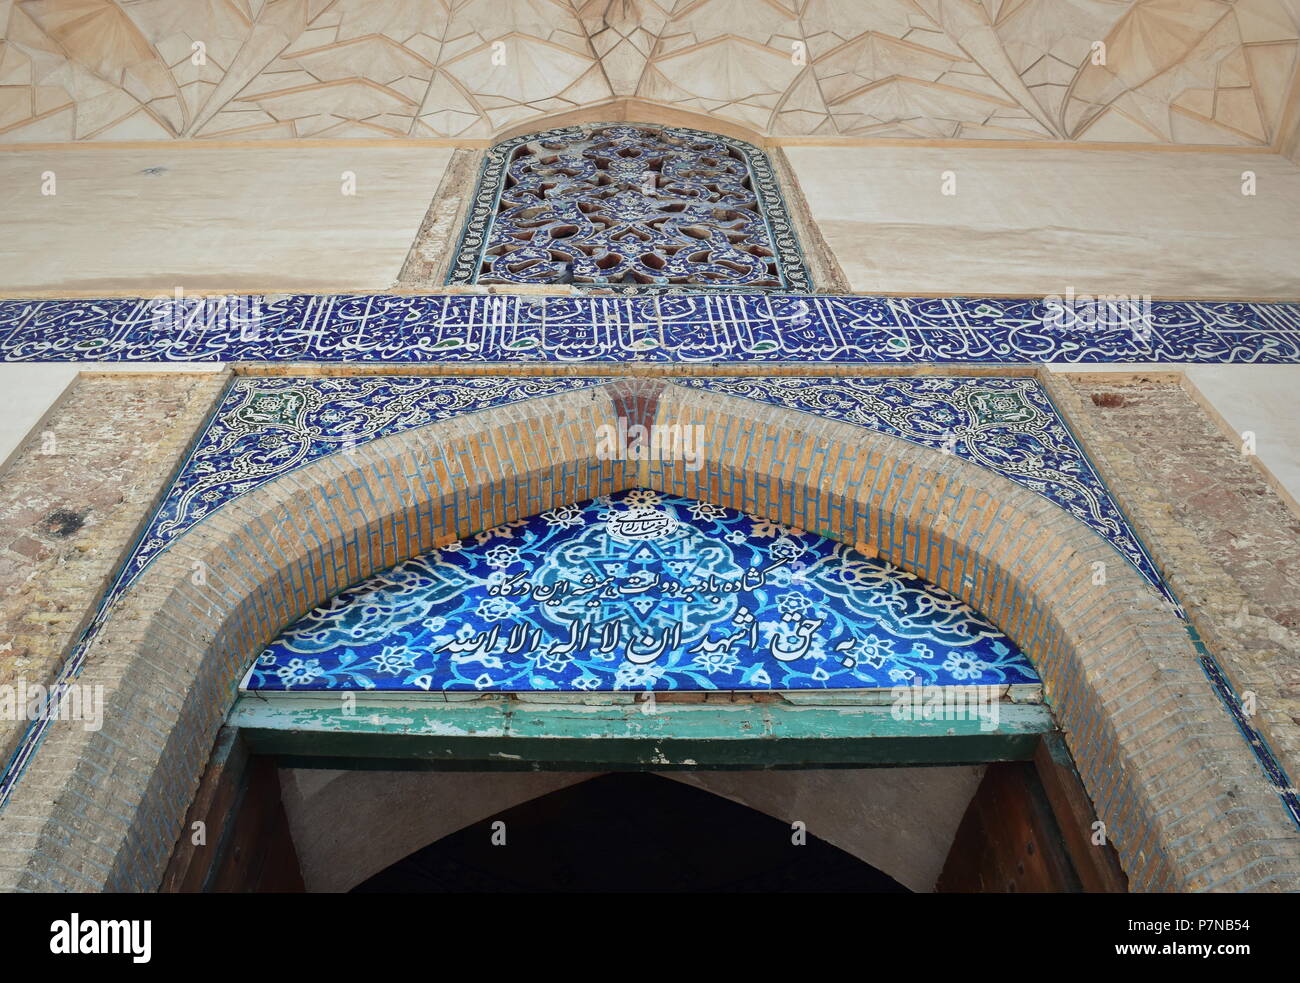 Historische Seidenstraße Eingangstor mit Elementen der Iranischen und islamischen Architektur wie schönen blauen Mosaikfliesen in floralen Mustern Stockfoto